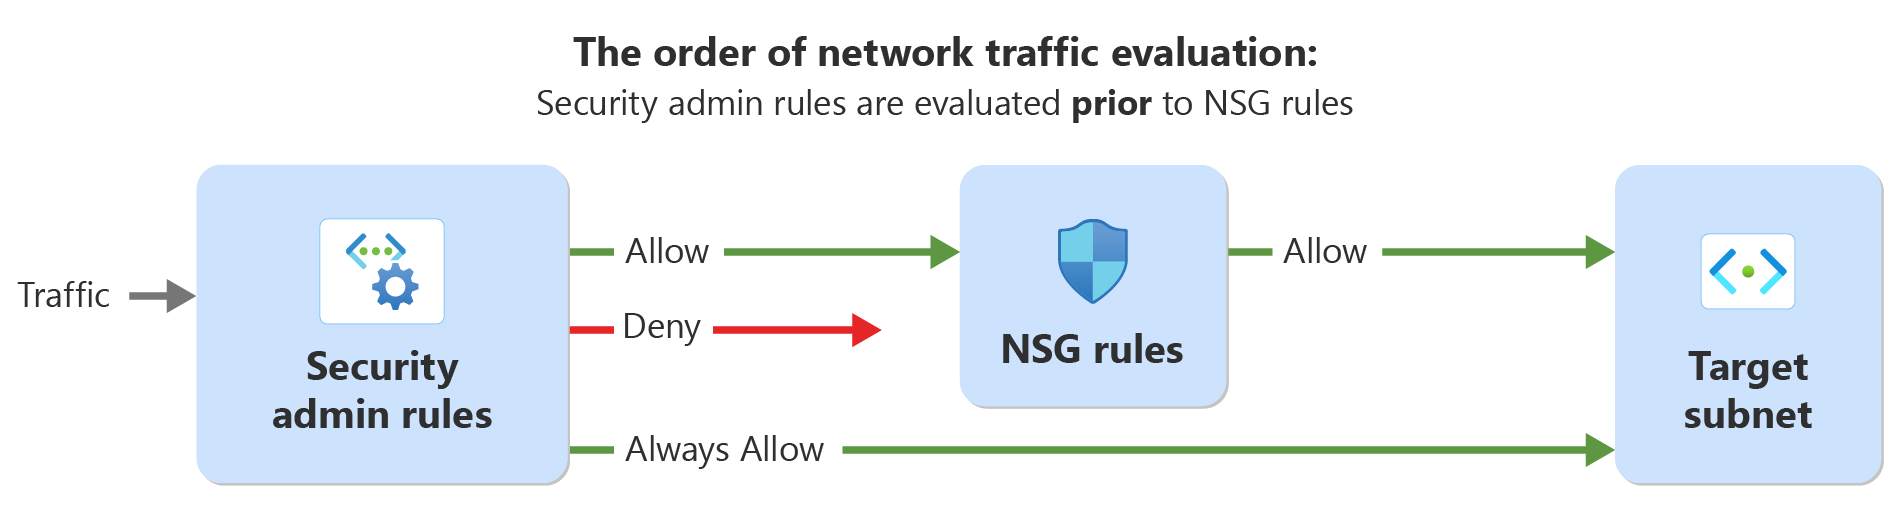 Схема, показывающая порядок оценки сетевого трафика с правилами администратора безопасности и правилами безопасности сети.